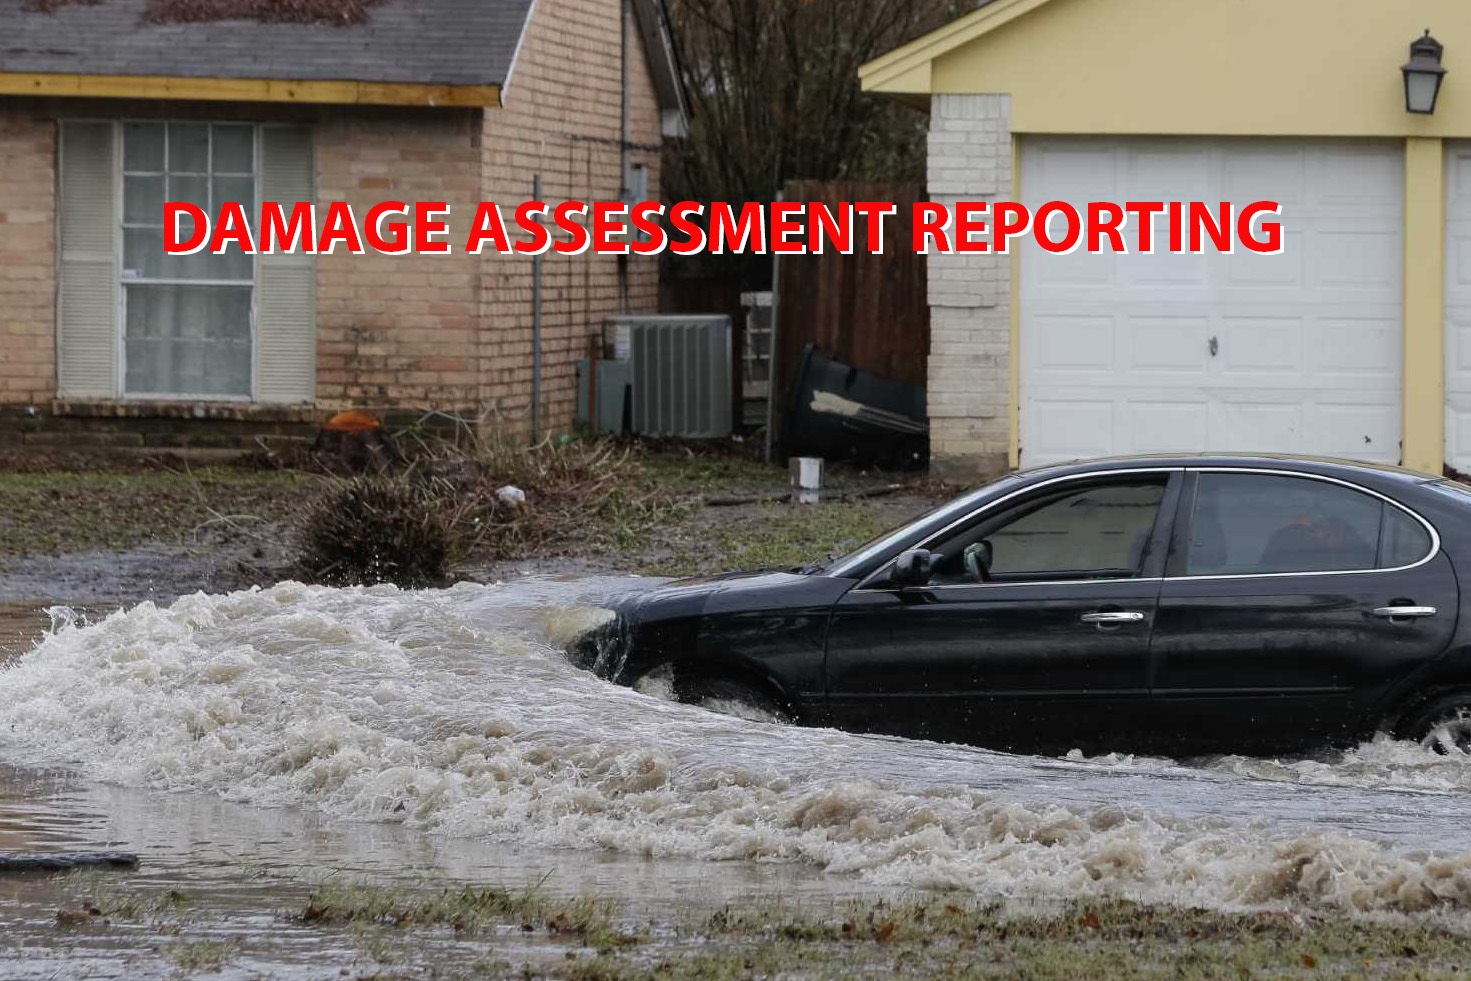 vehicle-in-flooded-street.jpg